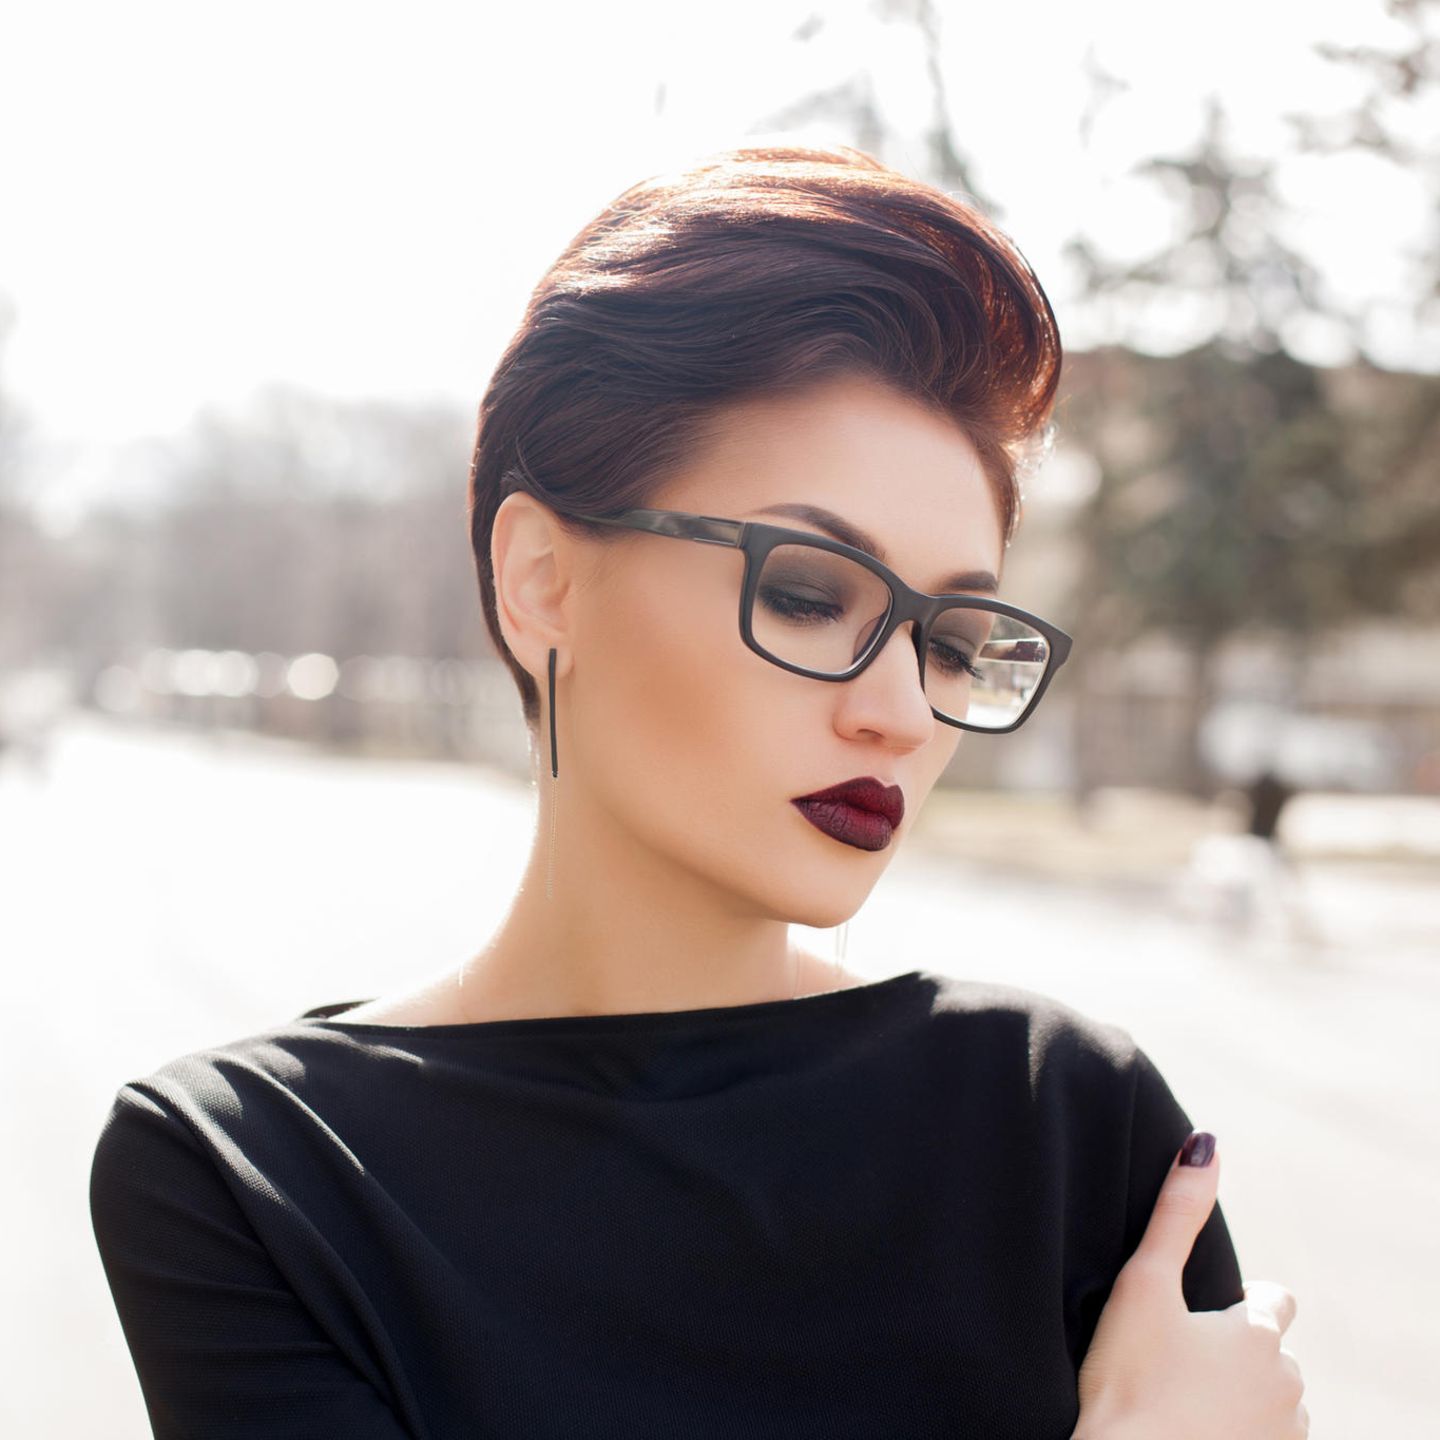 Frisuren mit Brille: Frau mit Undercut